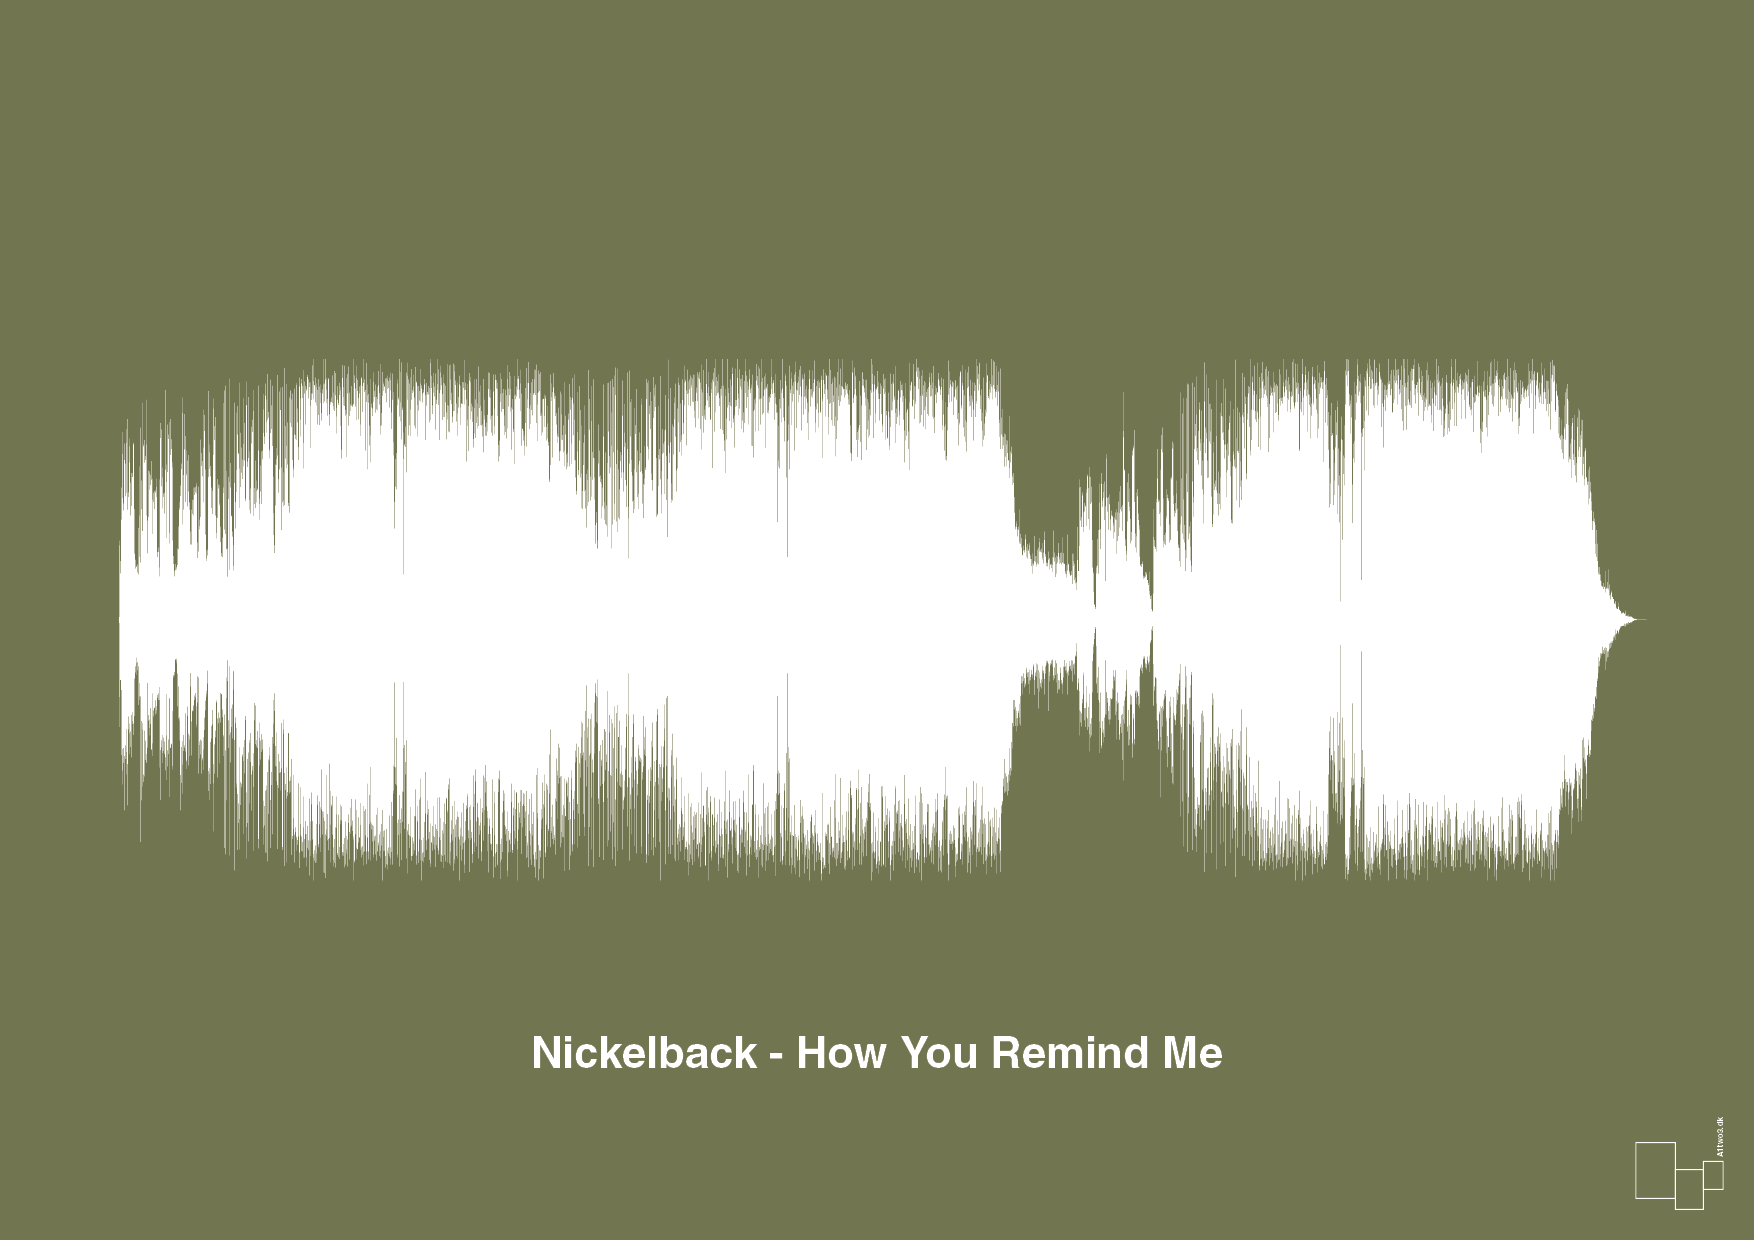 nickelback - how you remind me - Plakat med Musik i Secret Meadow